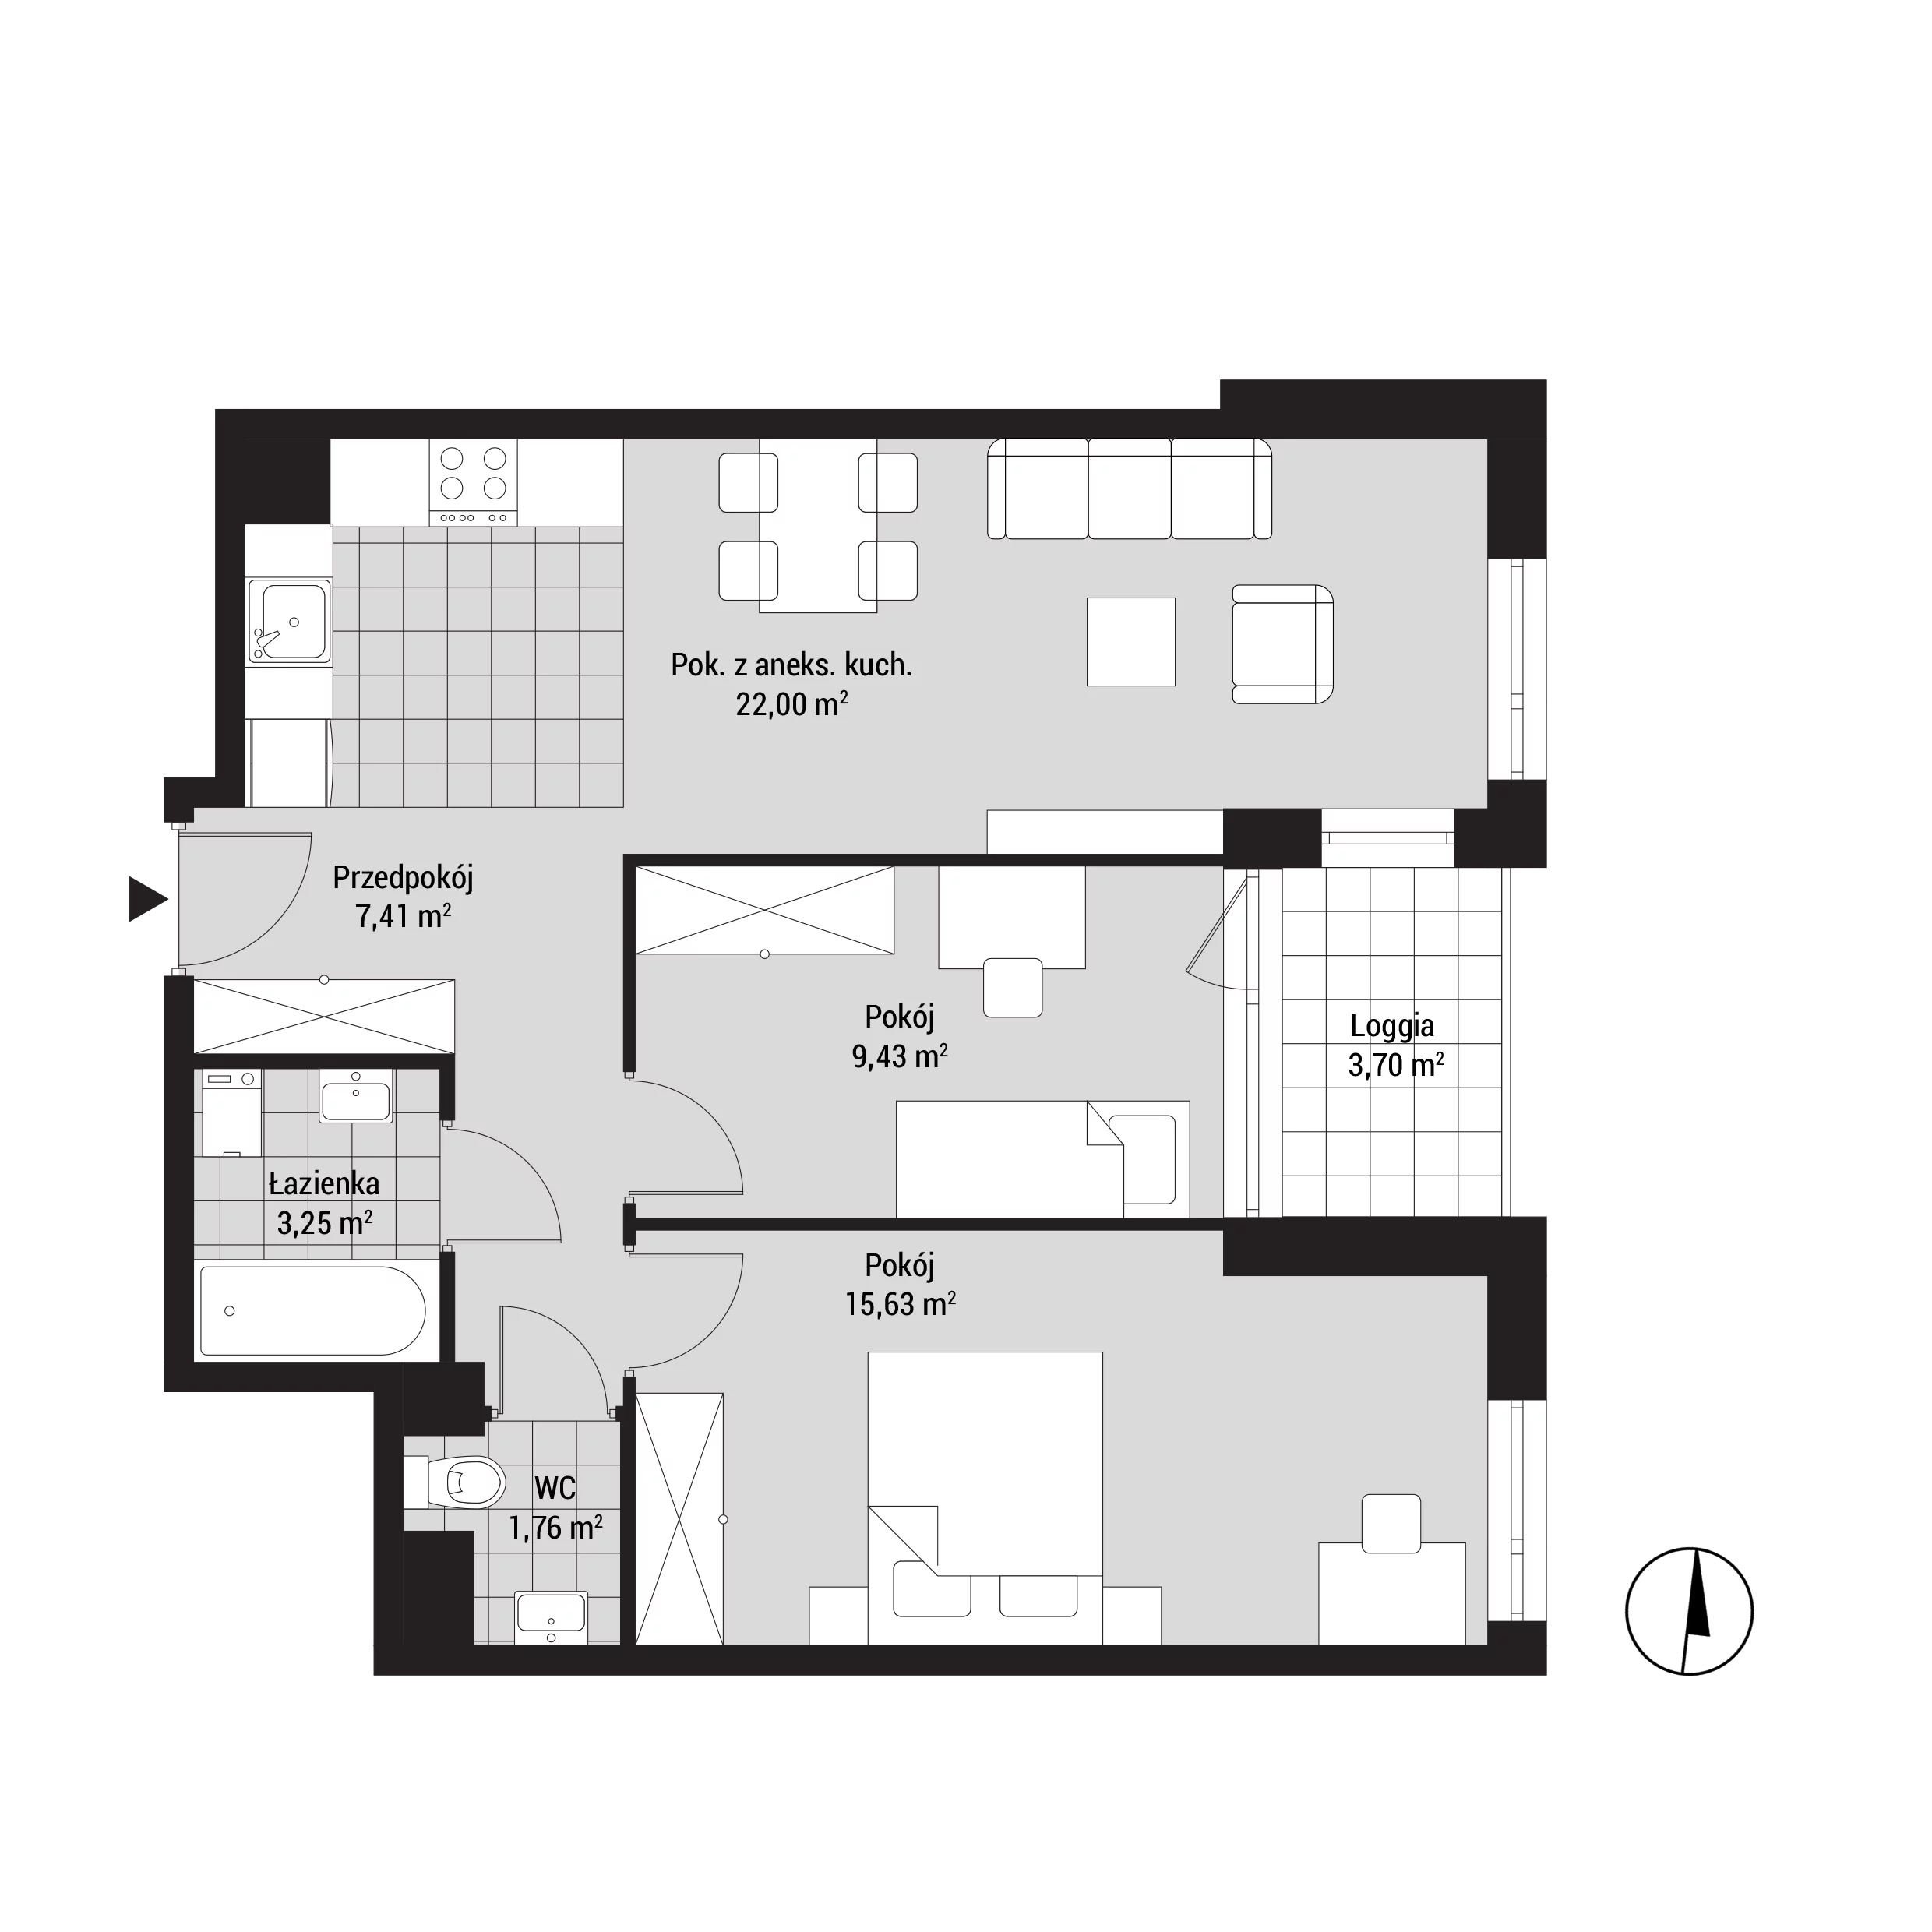 Mieszkanie 60,20 m², piętro 2, oferta nr mieszkanie A18, Na Koszutce, Katowice, Śródmieście, Koszutka, ul. Słoneczna 1